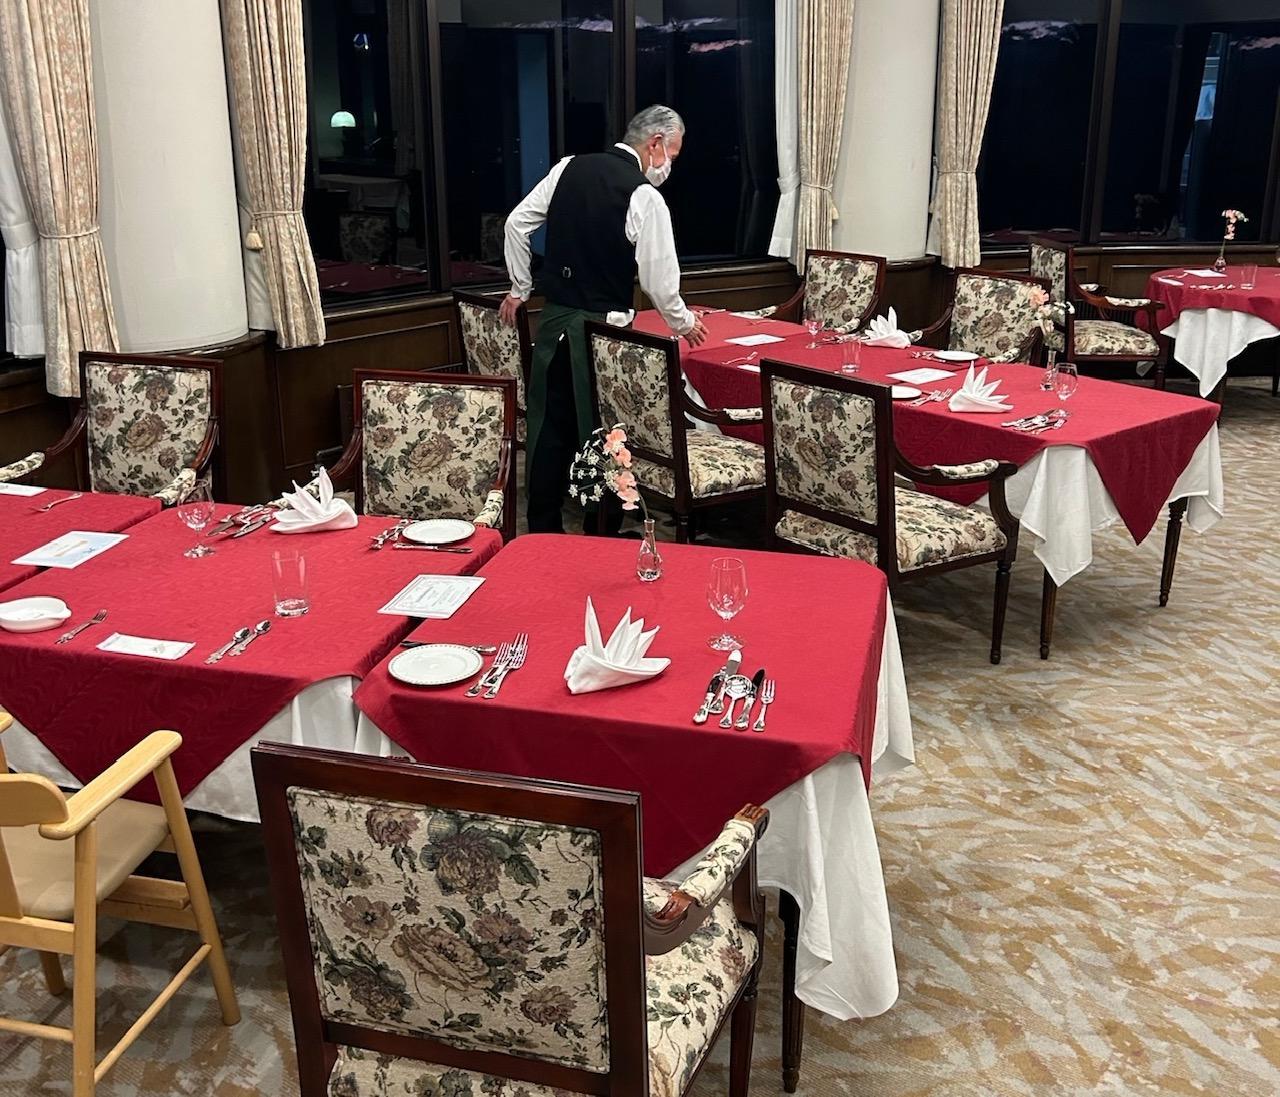 ２F洋食レストランにて、テーブルセットしてお客様をお迎えする準備が完了